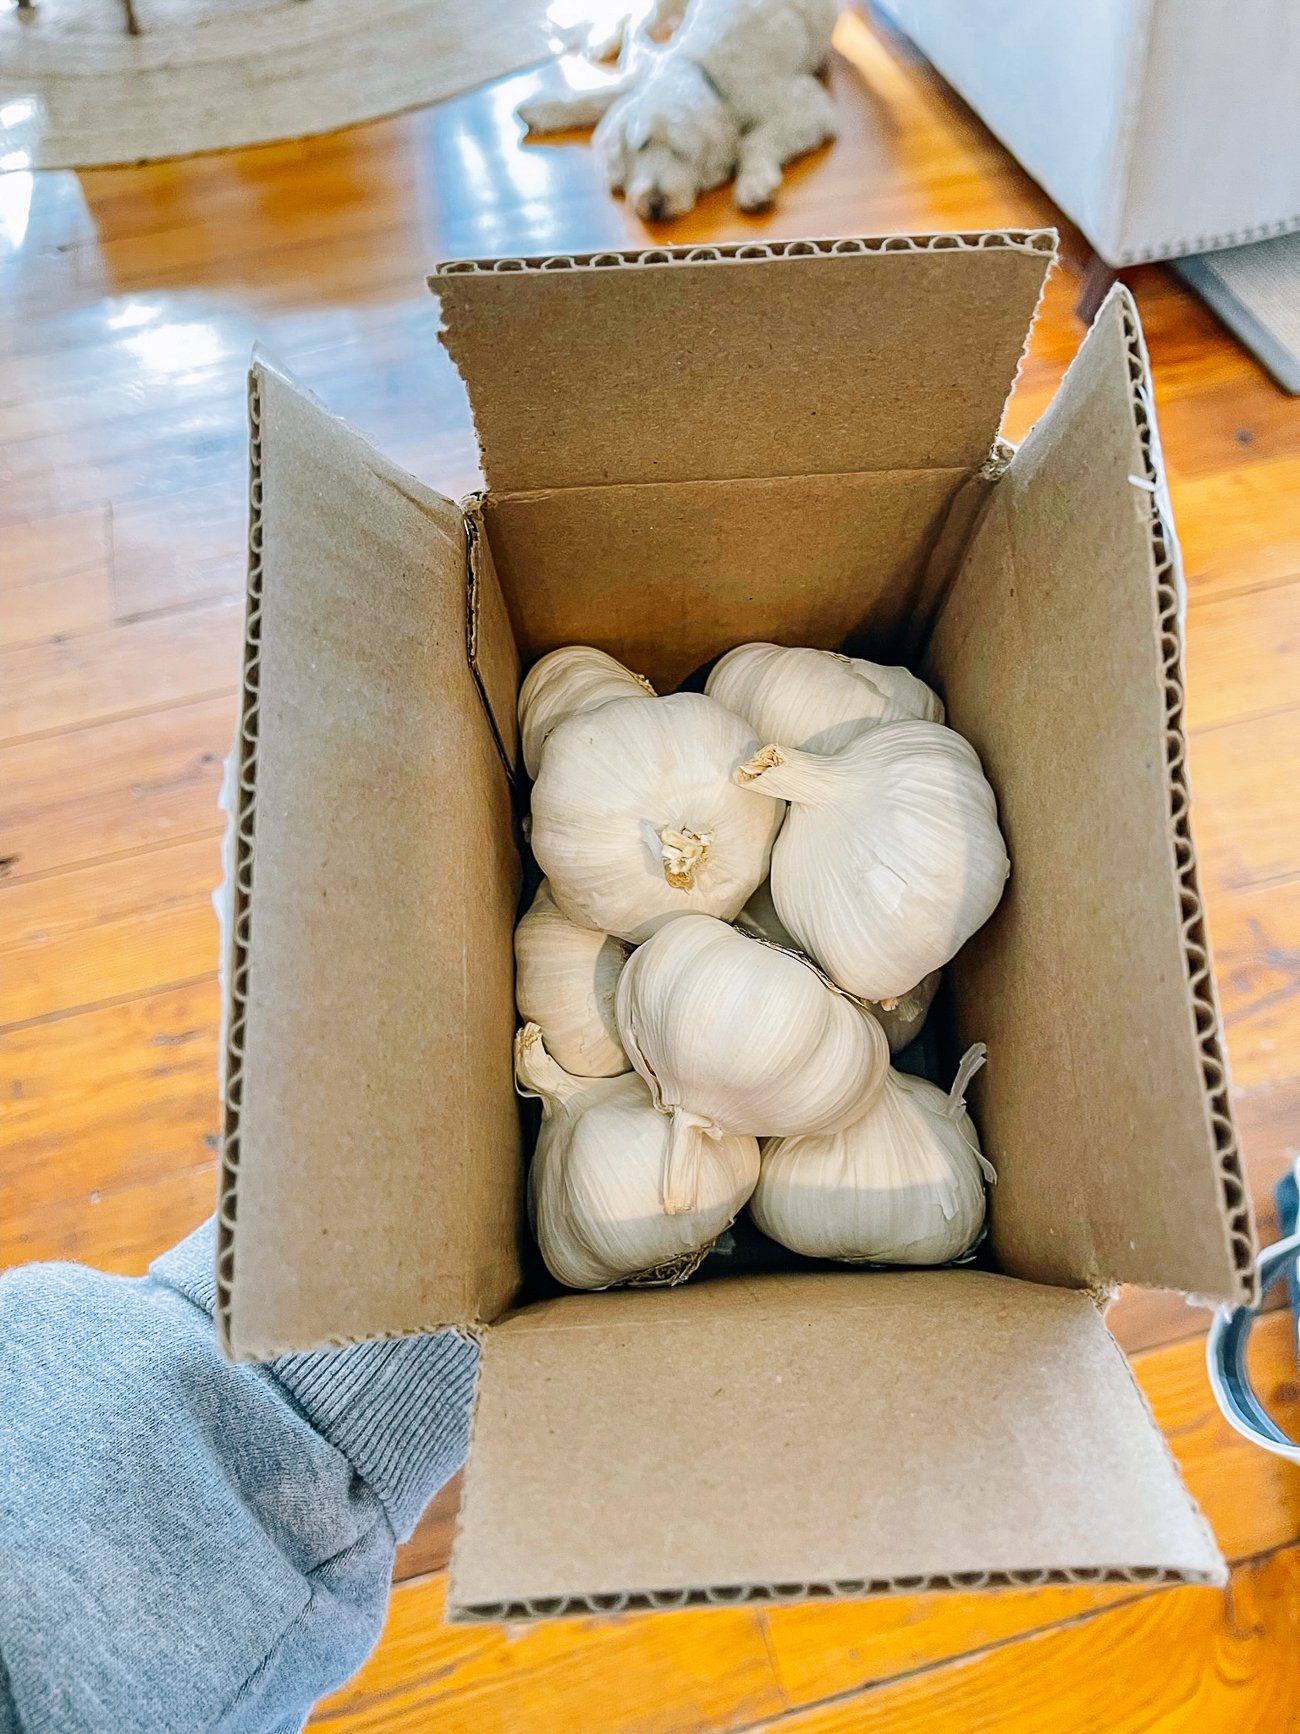 seed garlic in cardboard box